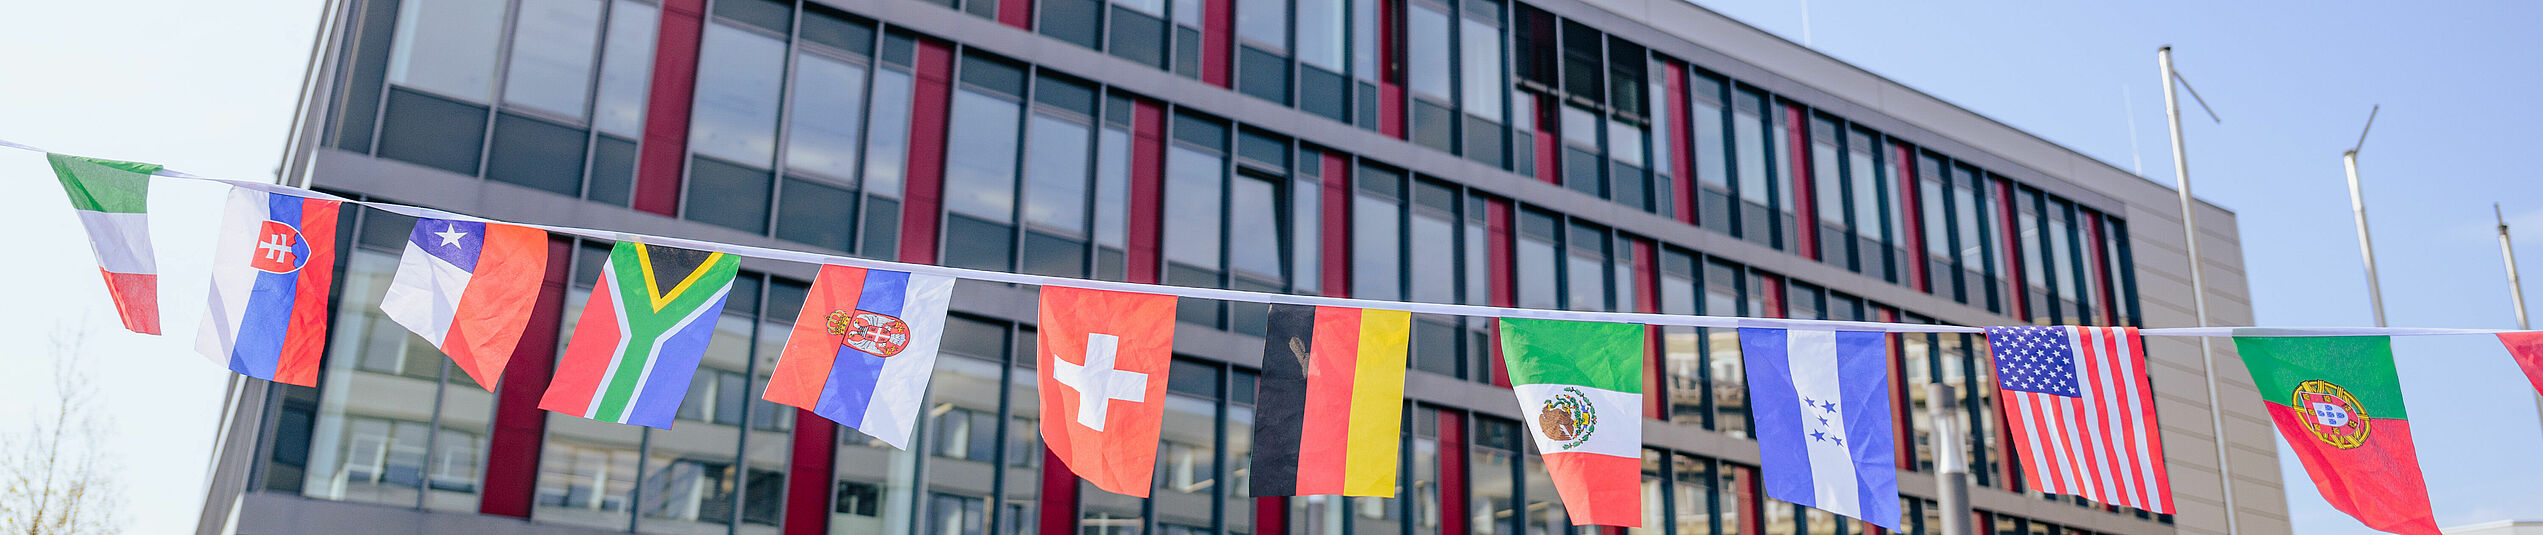 Zehn verschiedene kleine Länderflaggen aufgehängt auf einer Schnur, im Hintergrund das Gebäude I der Universität Paderborn.